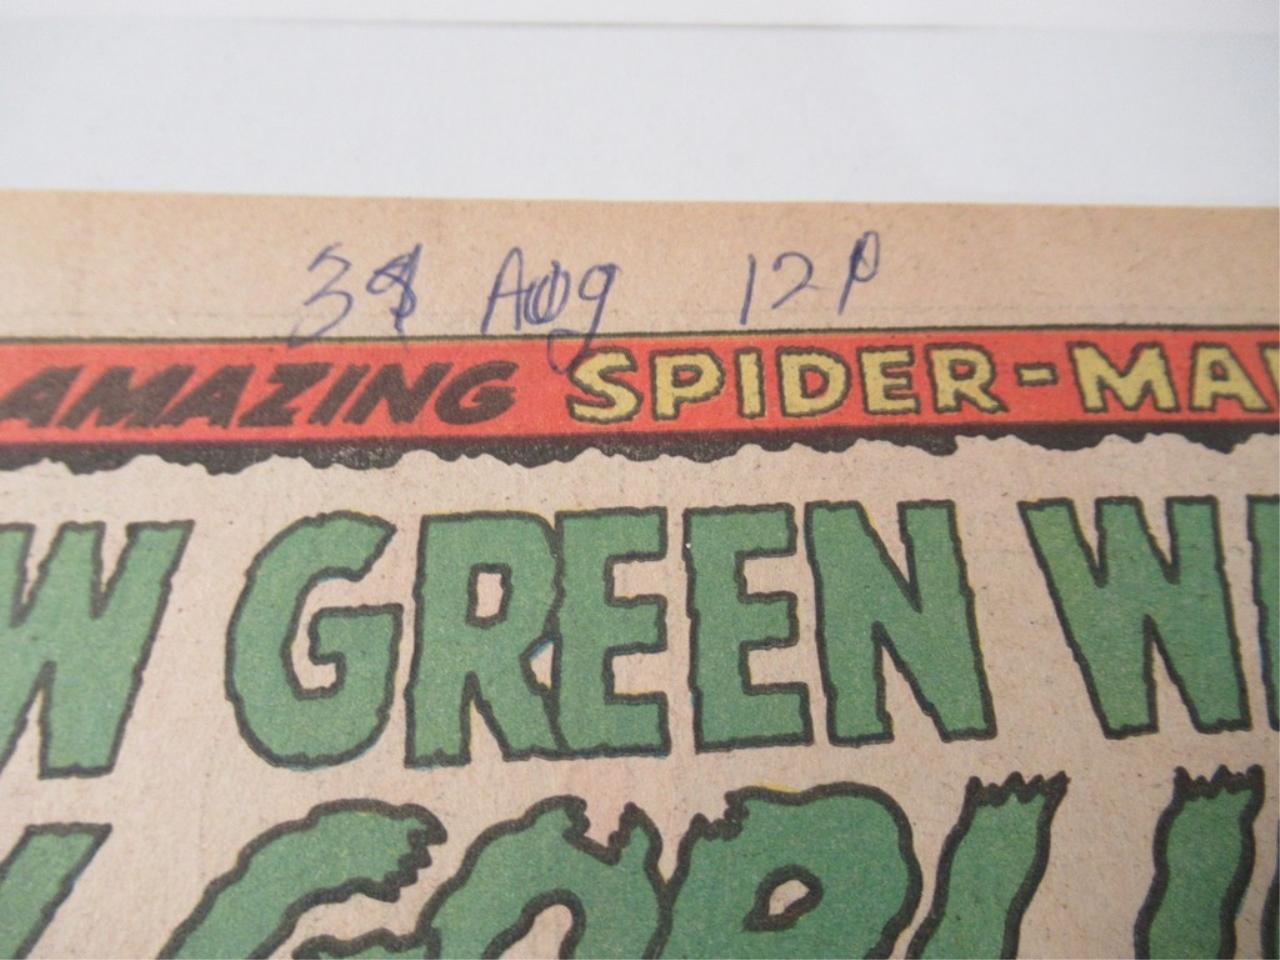 Amazing Spider-Man #39/Key